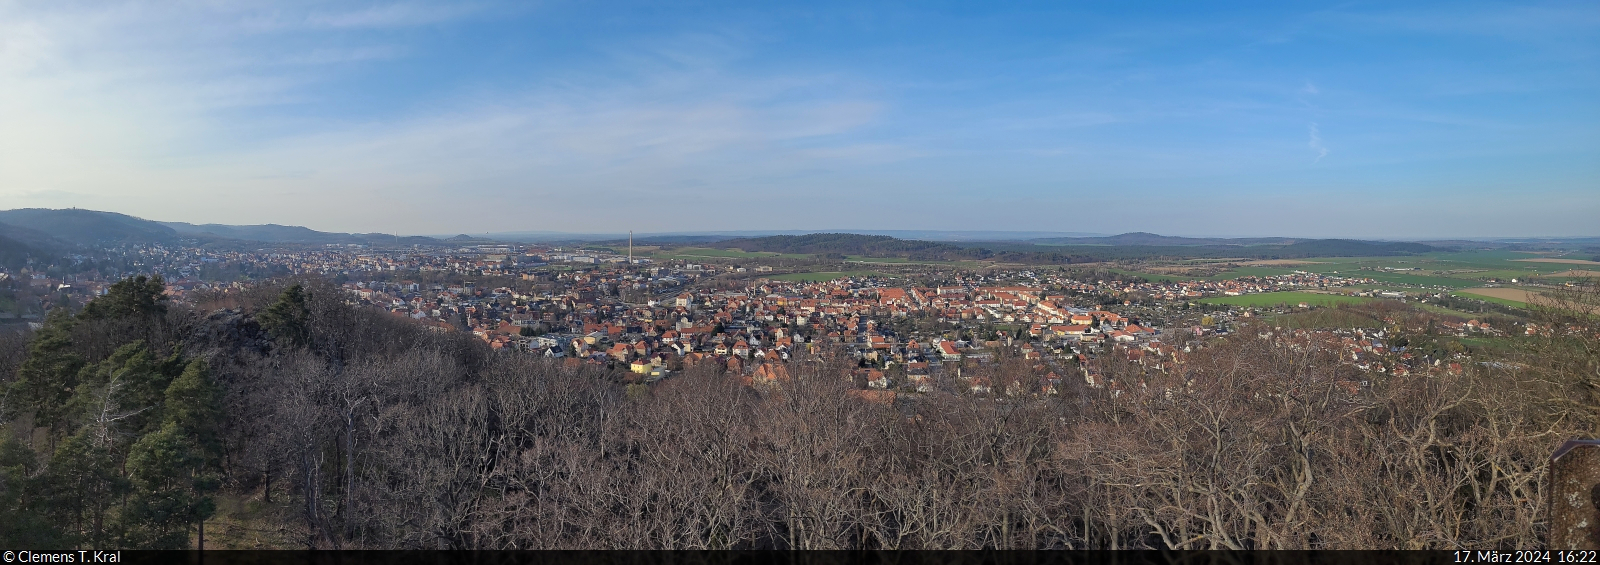 Panorama vom Großvaterfelsen an der Blankenburger Teufelsmauer ins nördliche Harzvorland. Unterhalb des Felsens liegt die Stempelstelle 76 der Harzer Wandernadel.

🕓 17.3.2024 | 16:22 Uhr